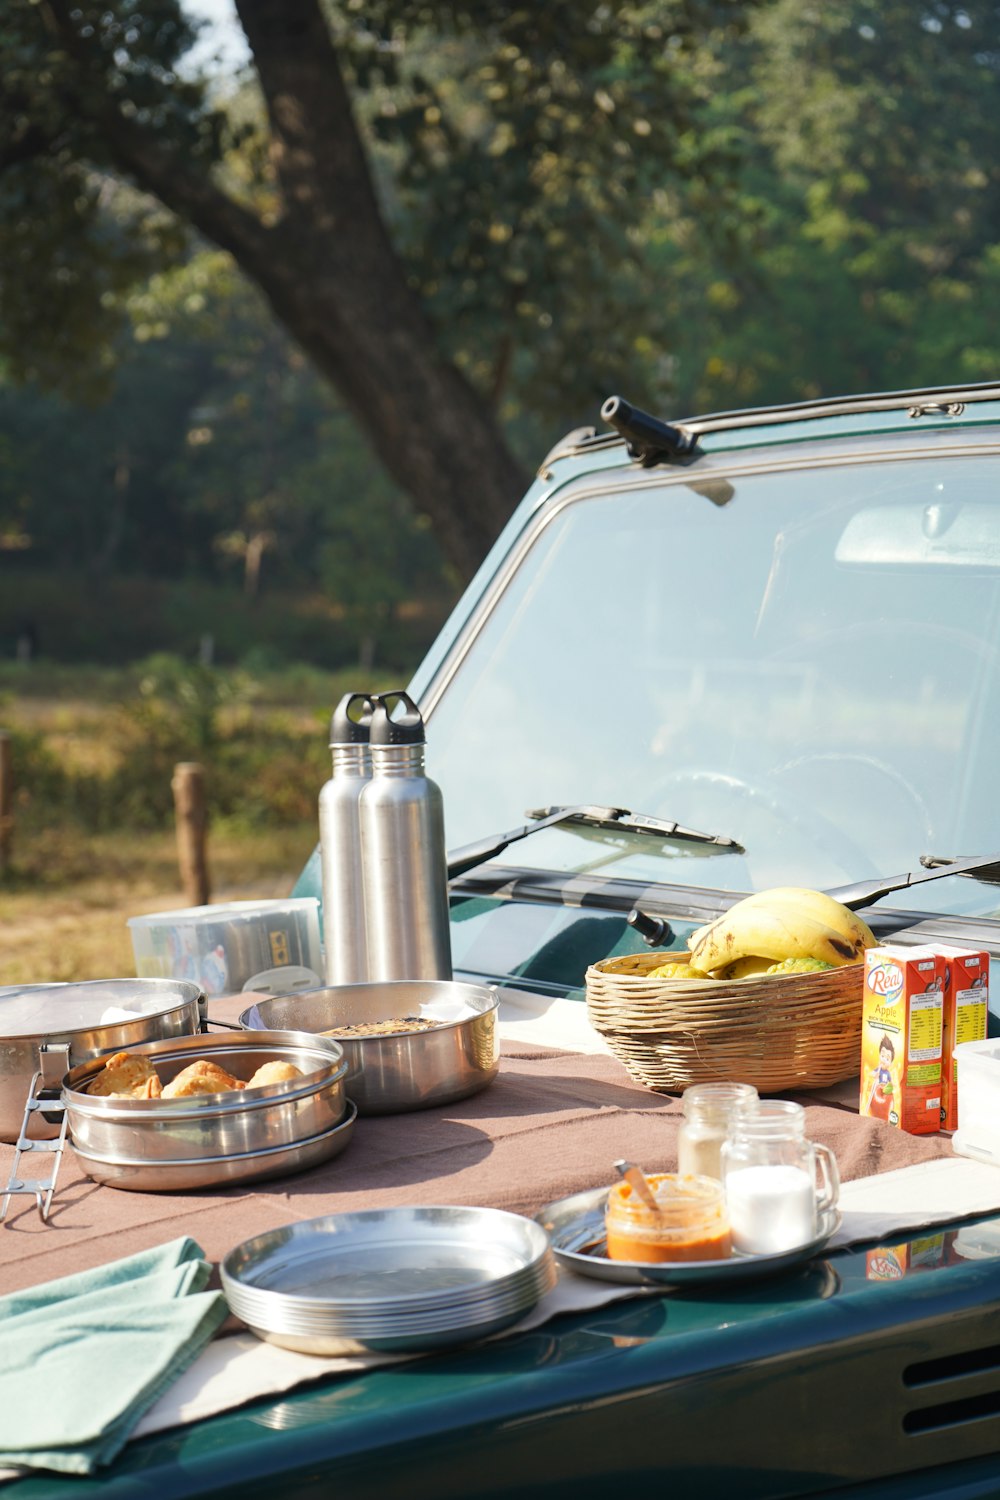 食べ物が乗ったピクニックテーブルと背景に車